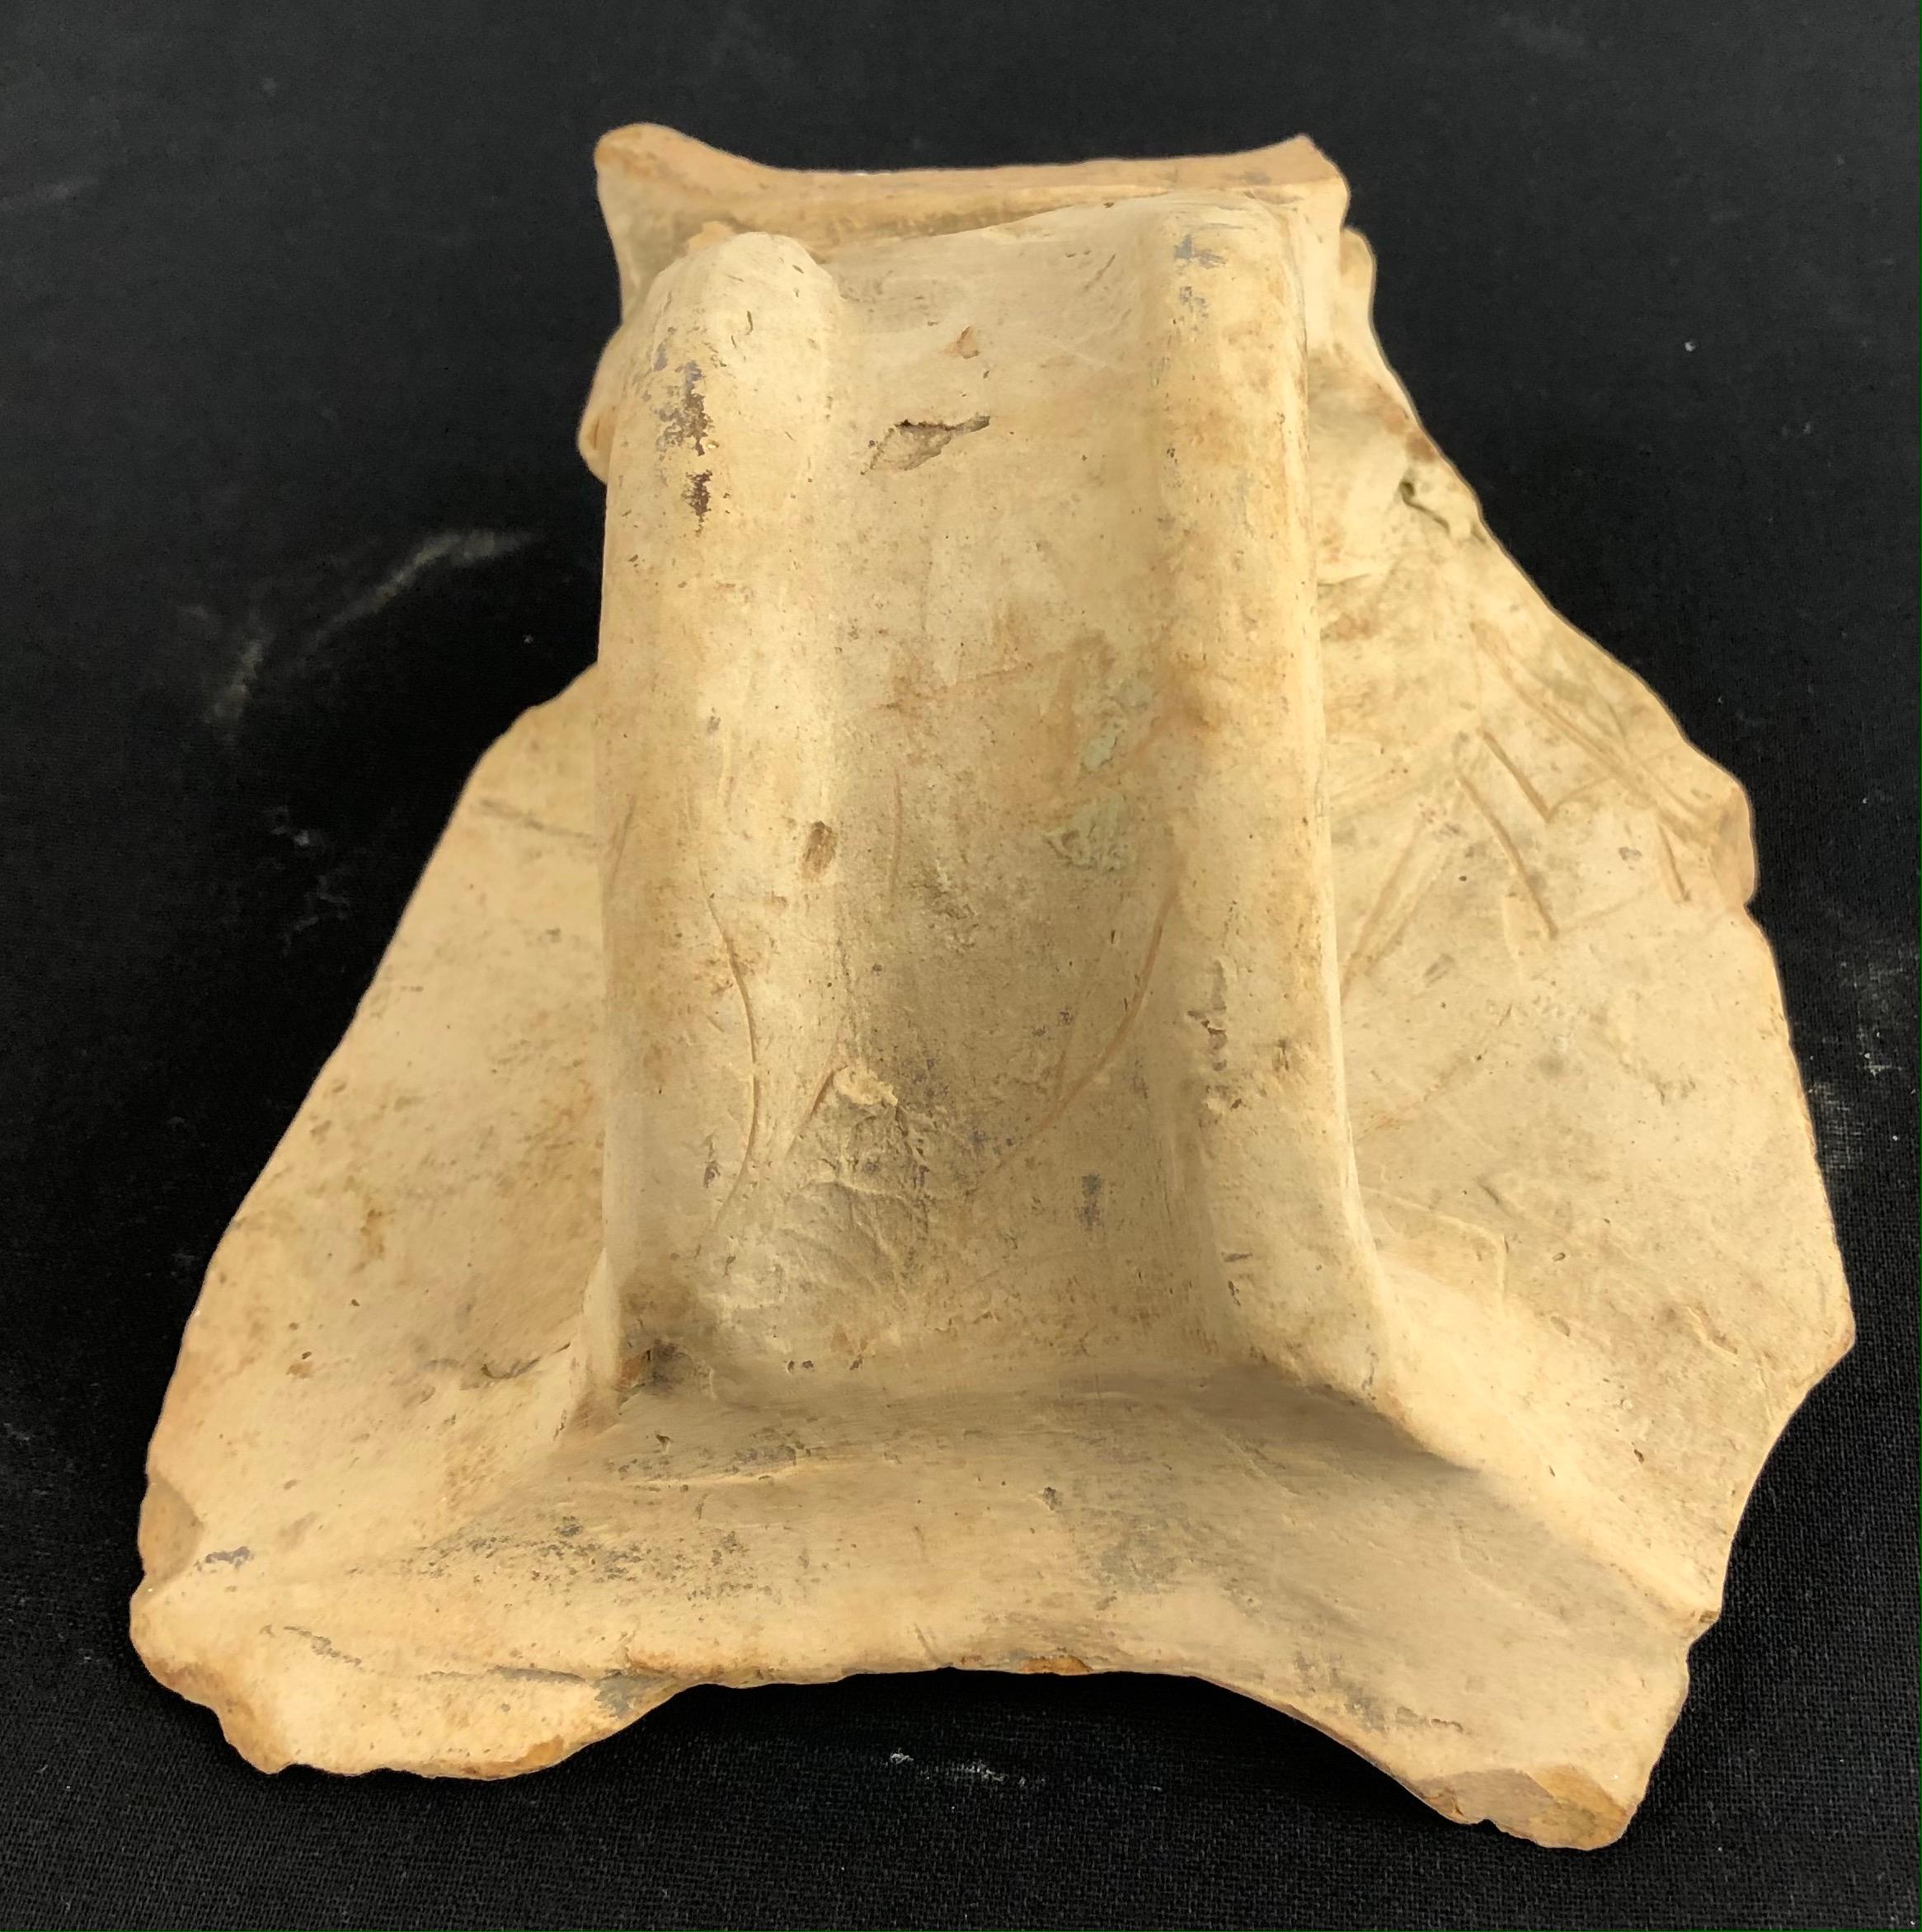 Fragment d'argile romaine, il s'agit des restes de l'anse de la jarre. 

Ce fragment a été trouvé dans l'un des plus anciens ports de France, FOS, non loin d'Arles où il existe des vestiges historiques très importants de l'Empire romain.